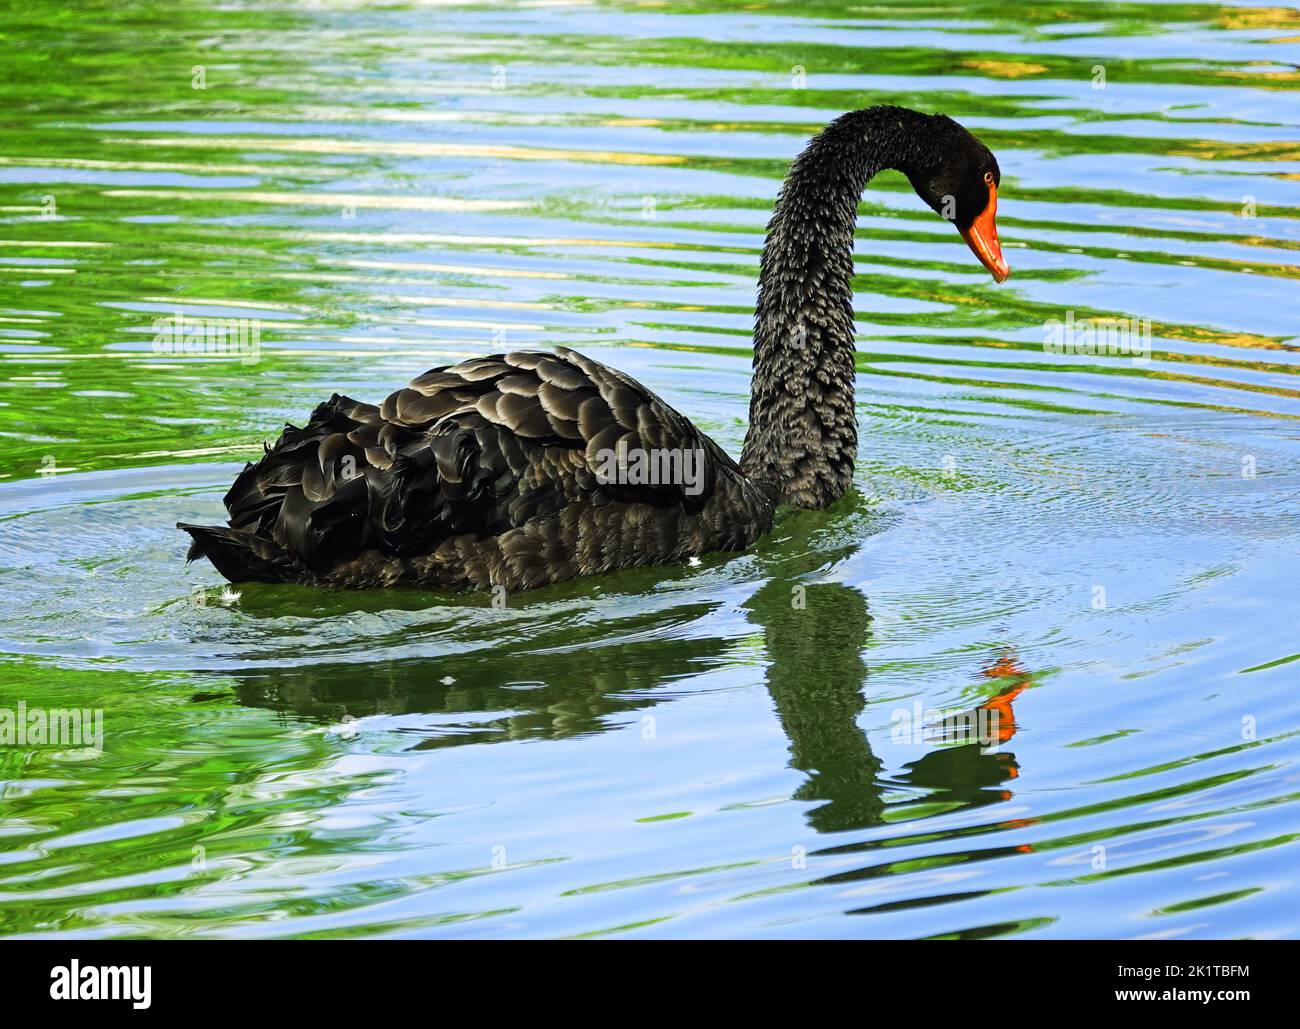 Cygne noir regardant sa réflexion dans l'eau comme Narcisse. Lieu: Detmold, Allemagne Banque D'Images